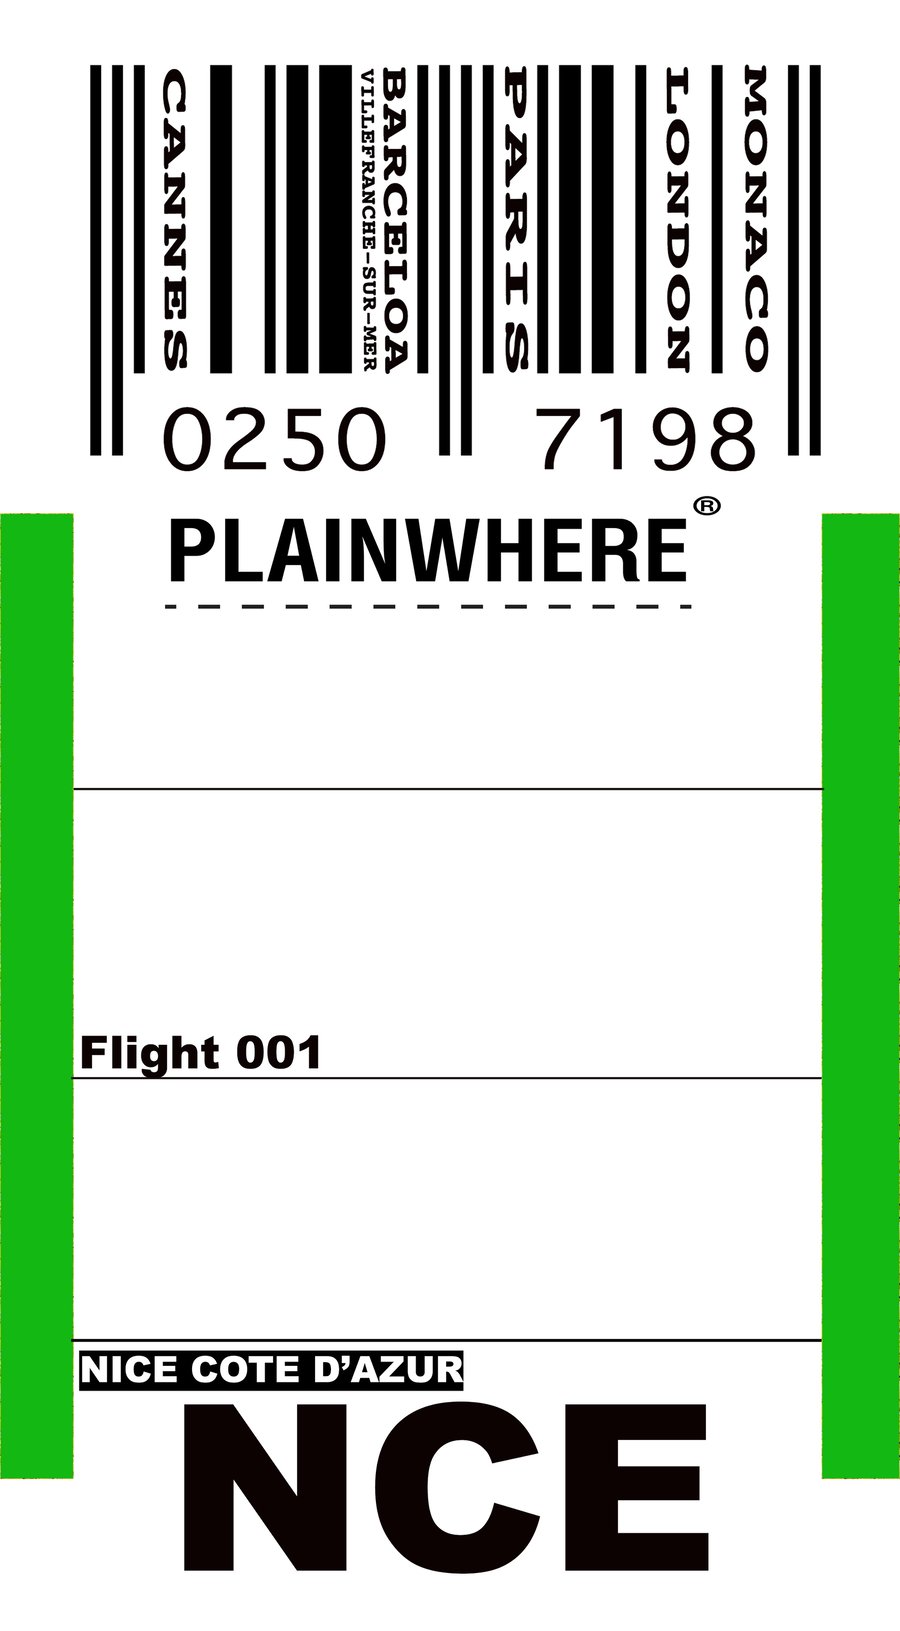 Image of PlainWhere NICE Luggage Tag Sticker